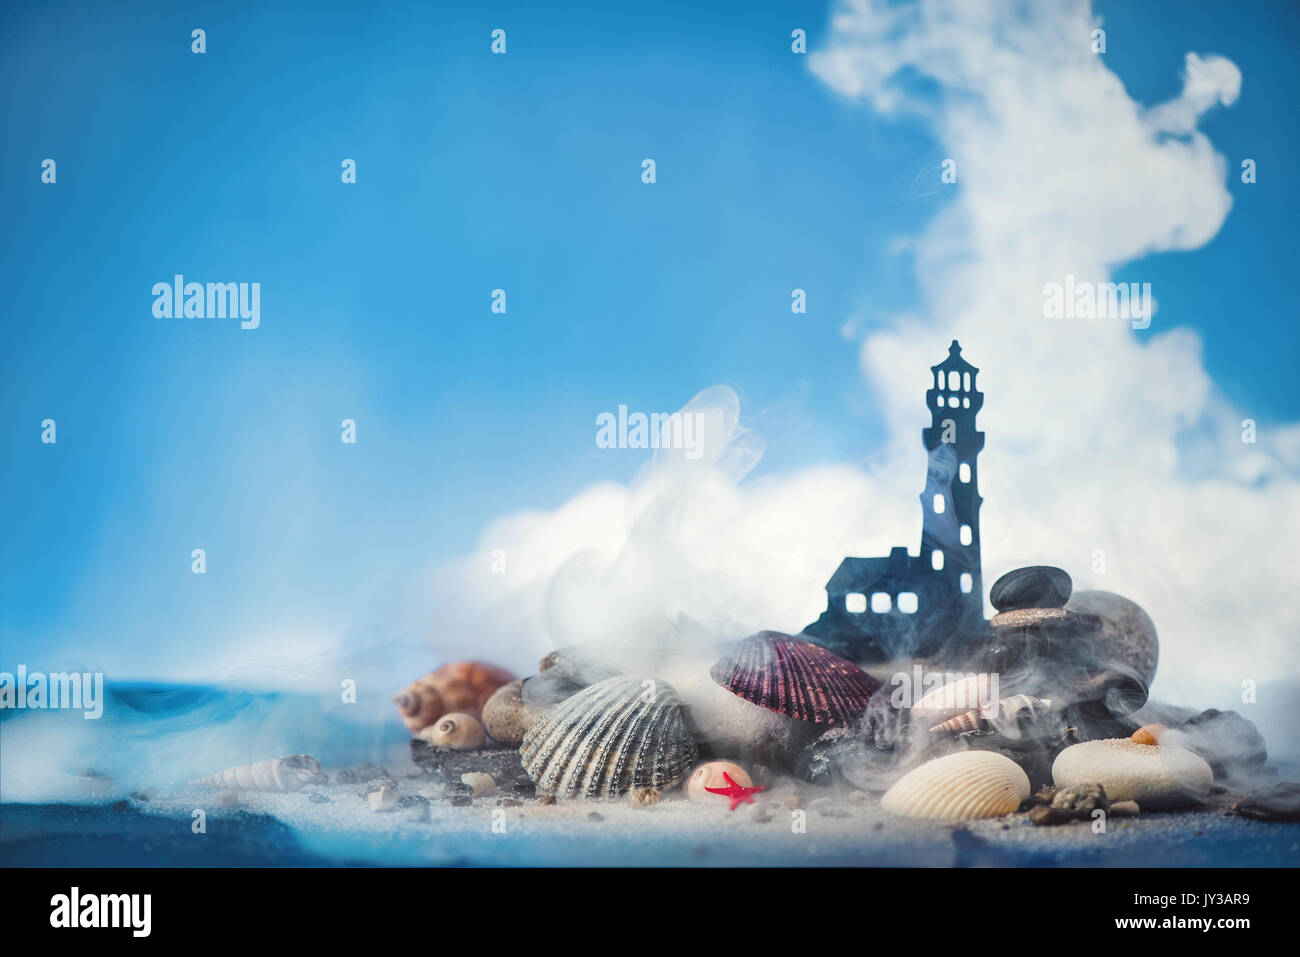 Thema See konzeptionelle Shot mit kleinen Leuchtturm auf einem Haufen Sand und Muscheln auf blauem Hintergrund. Kopieren Sie Platz. Stockfoto